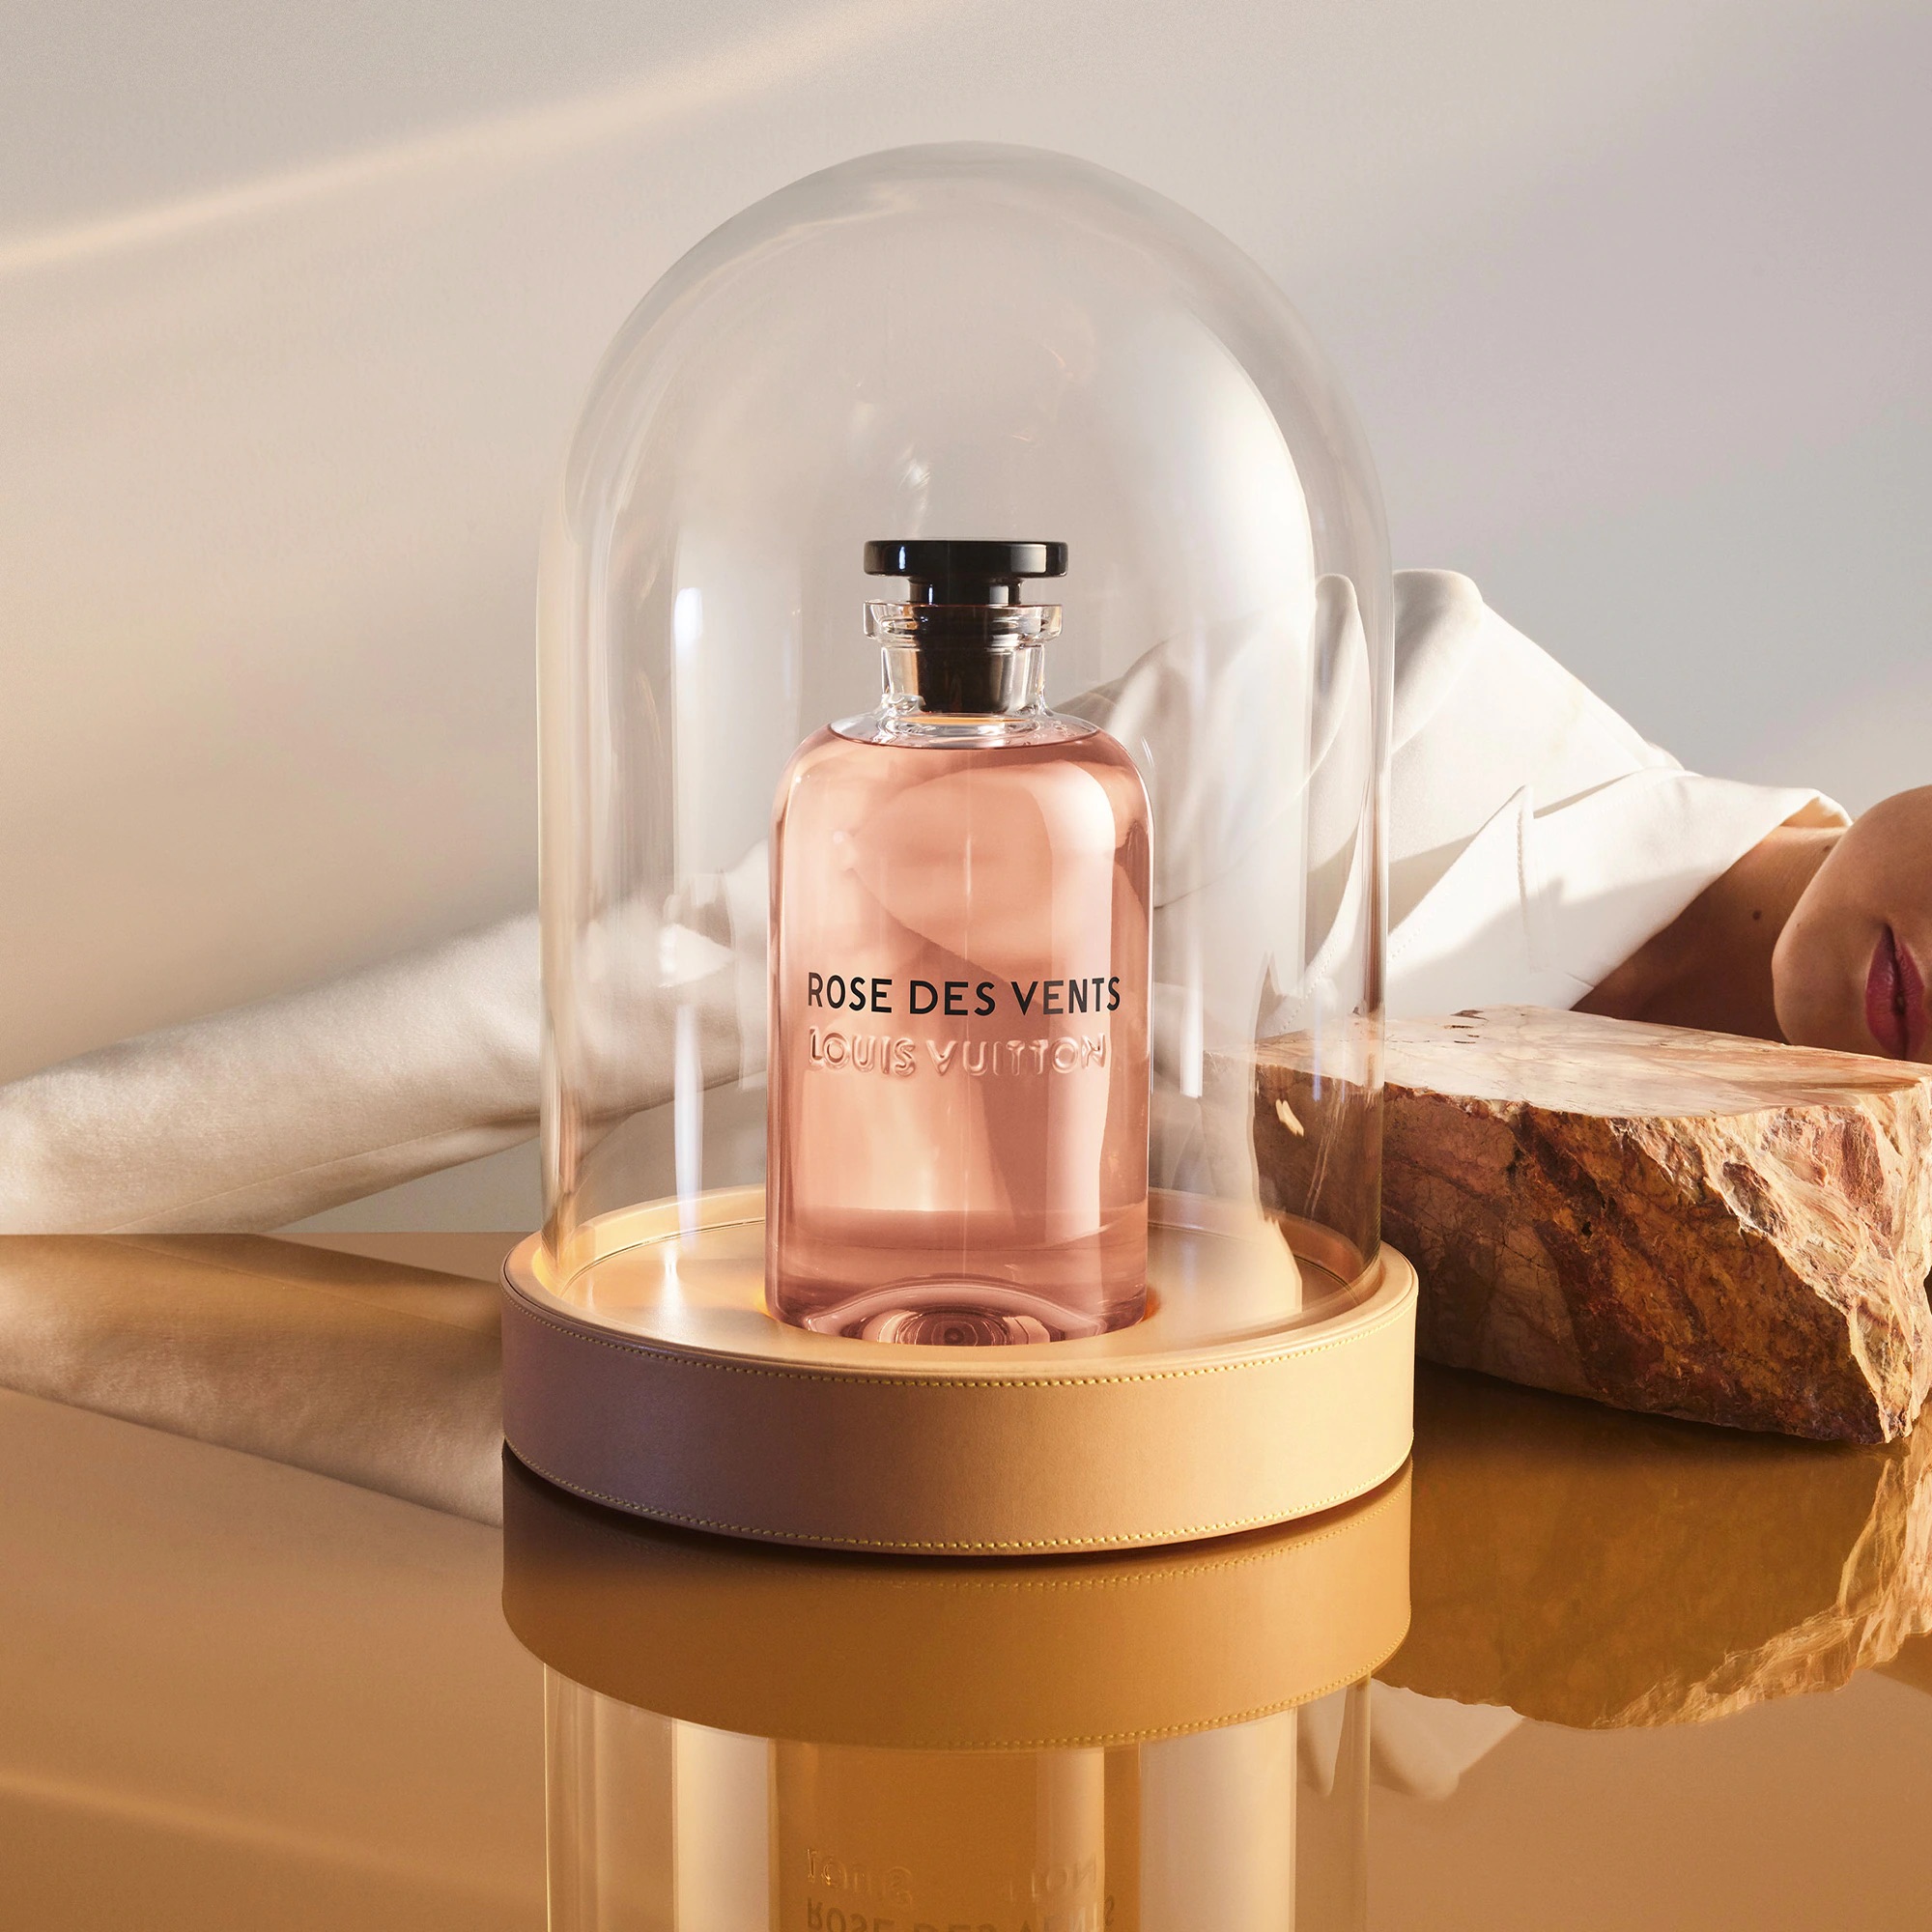 Louis Vuitton's new fragrances have arrived